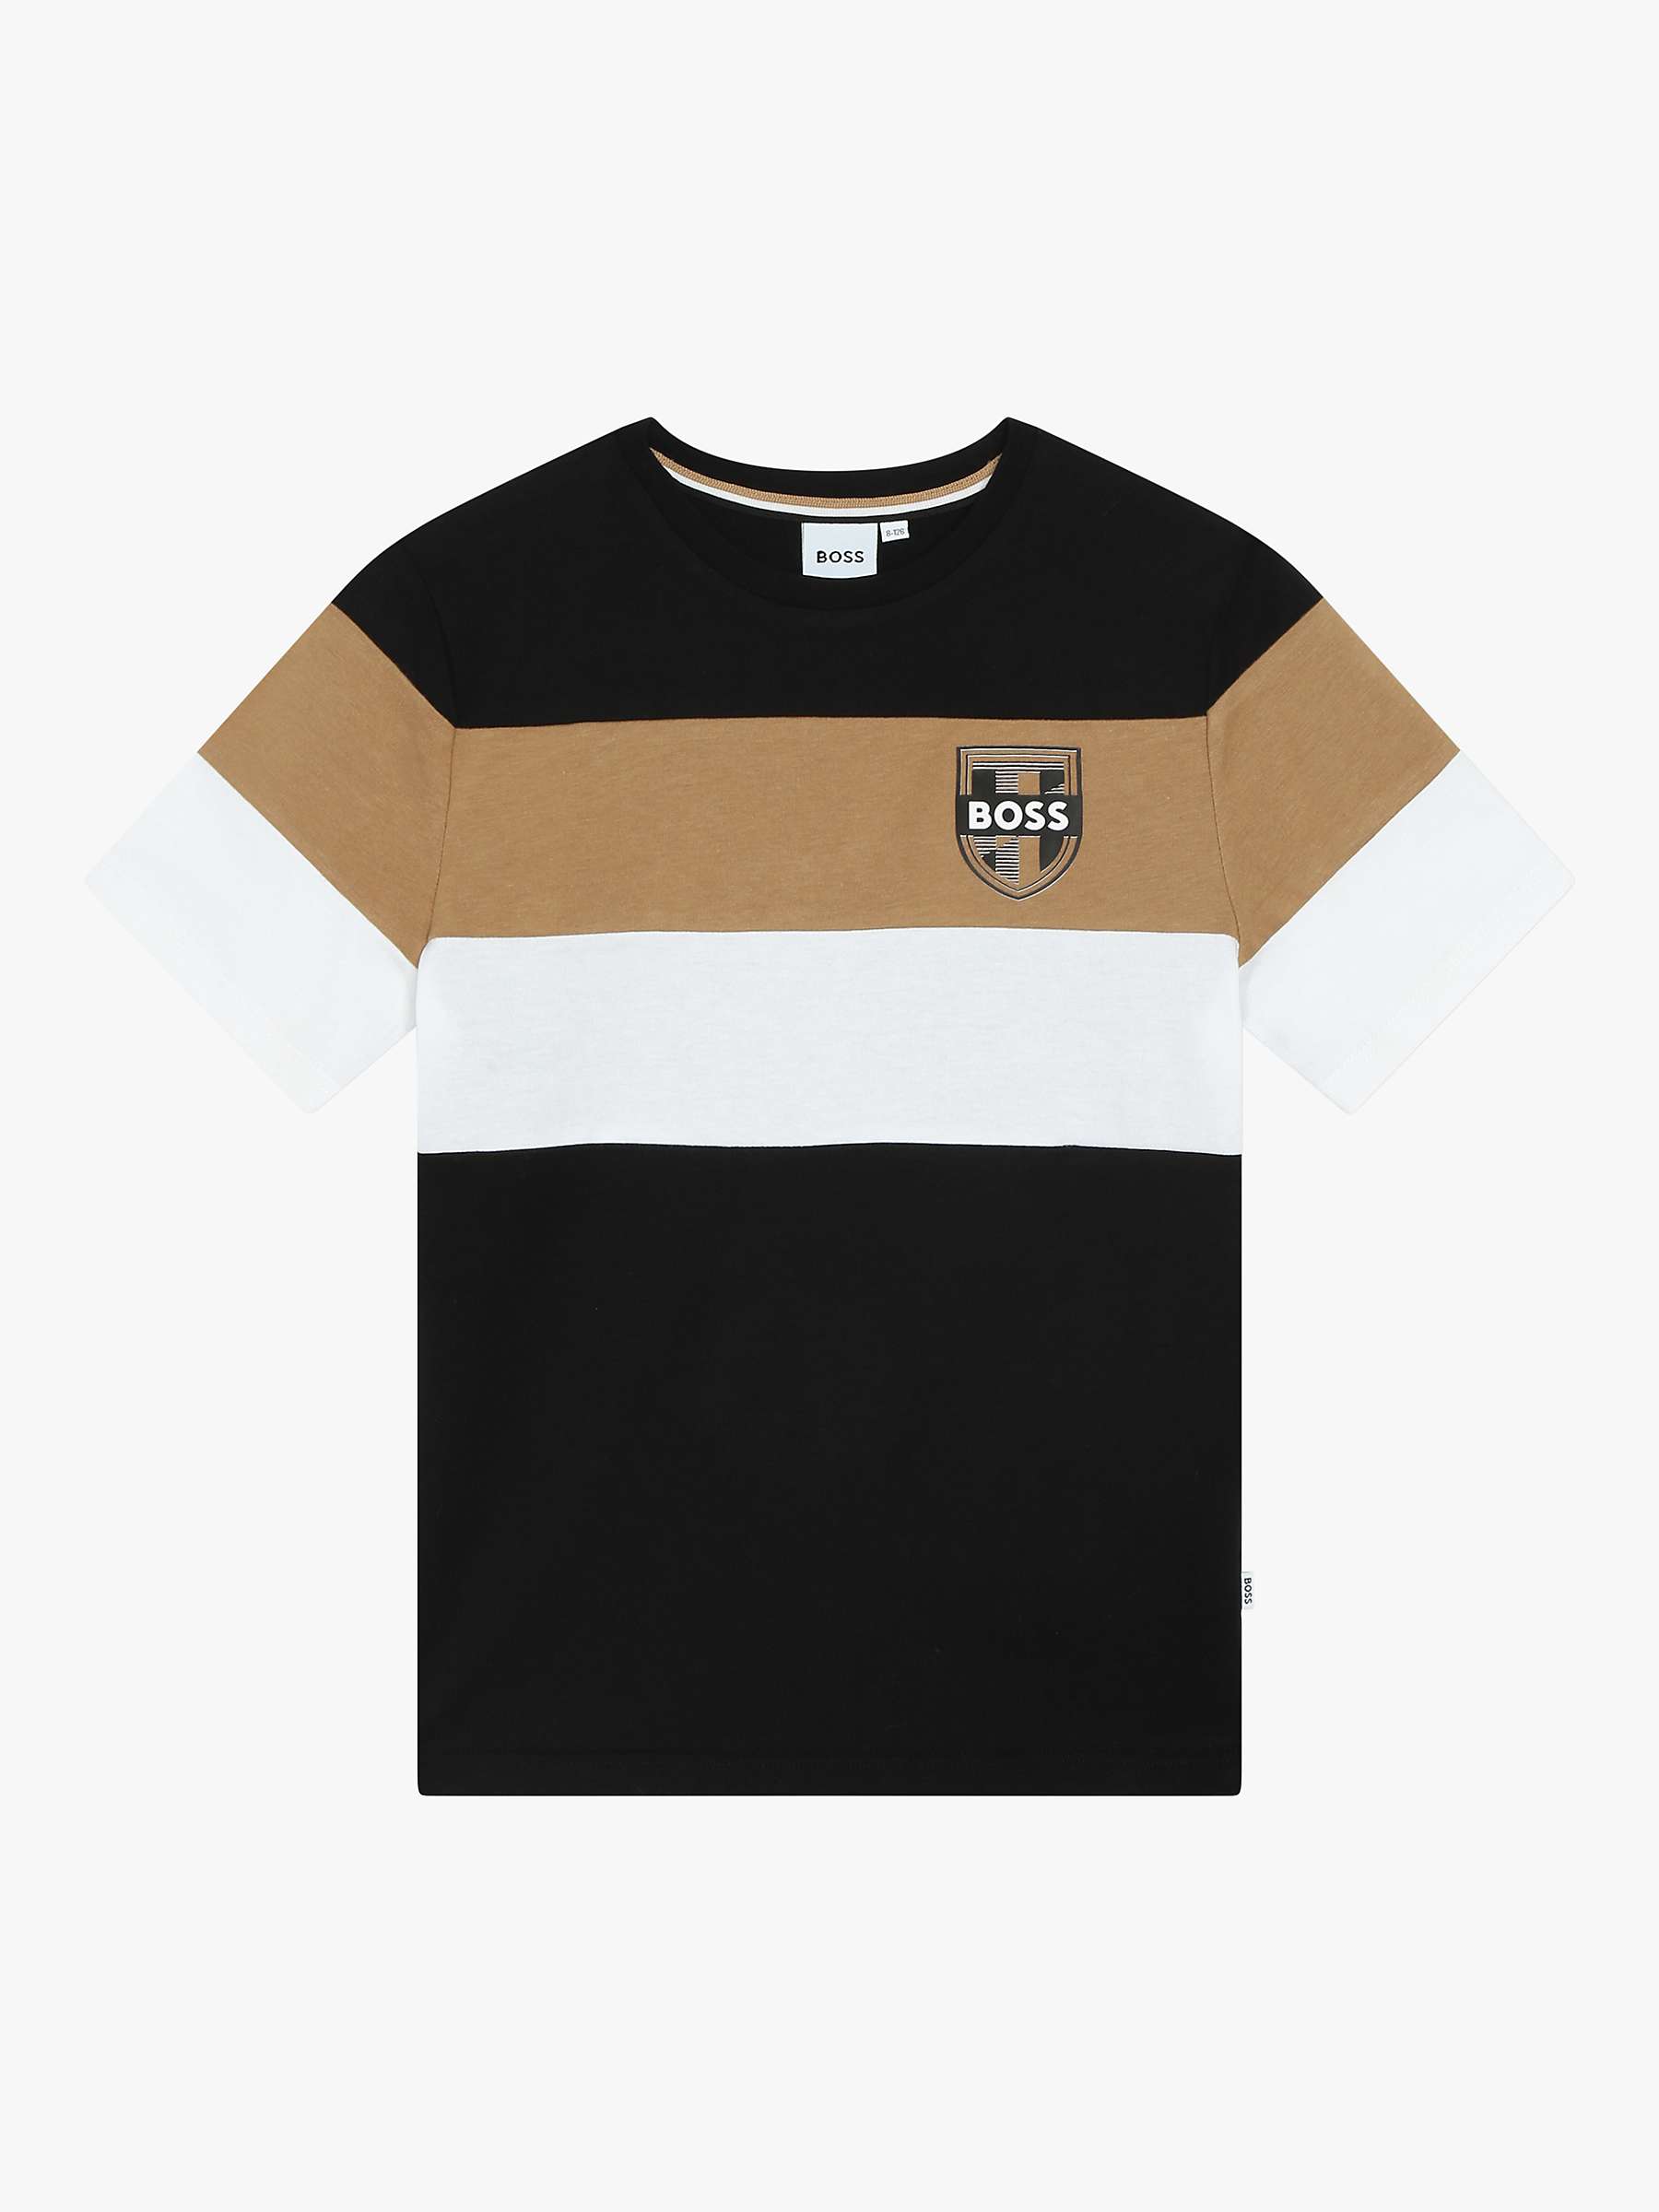 Buy BOSS Kid's Short Sleeve T-Shirt, Black/Multi Online at johnlewis.com